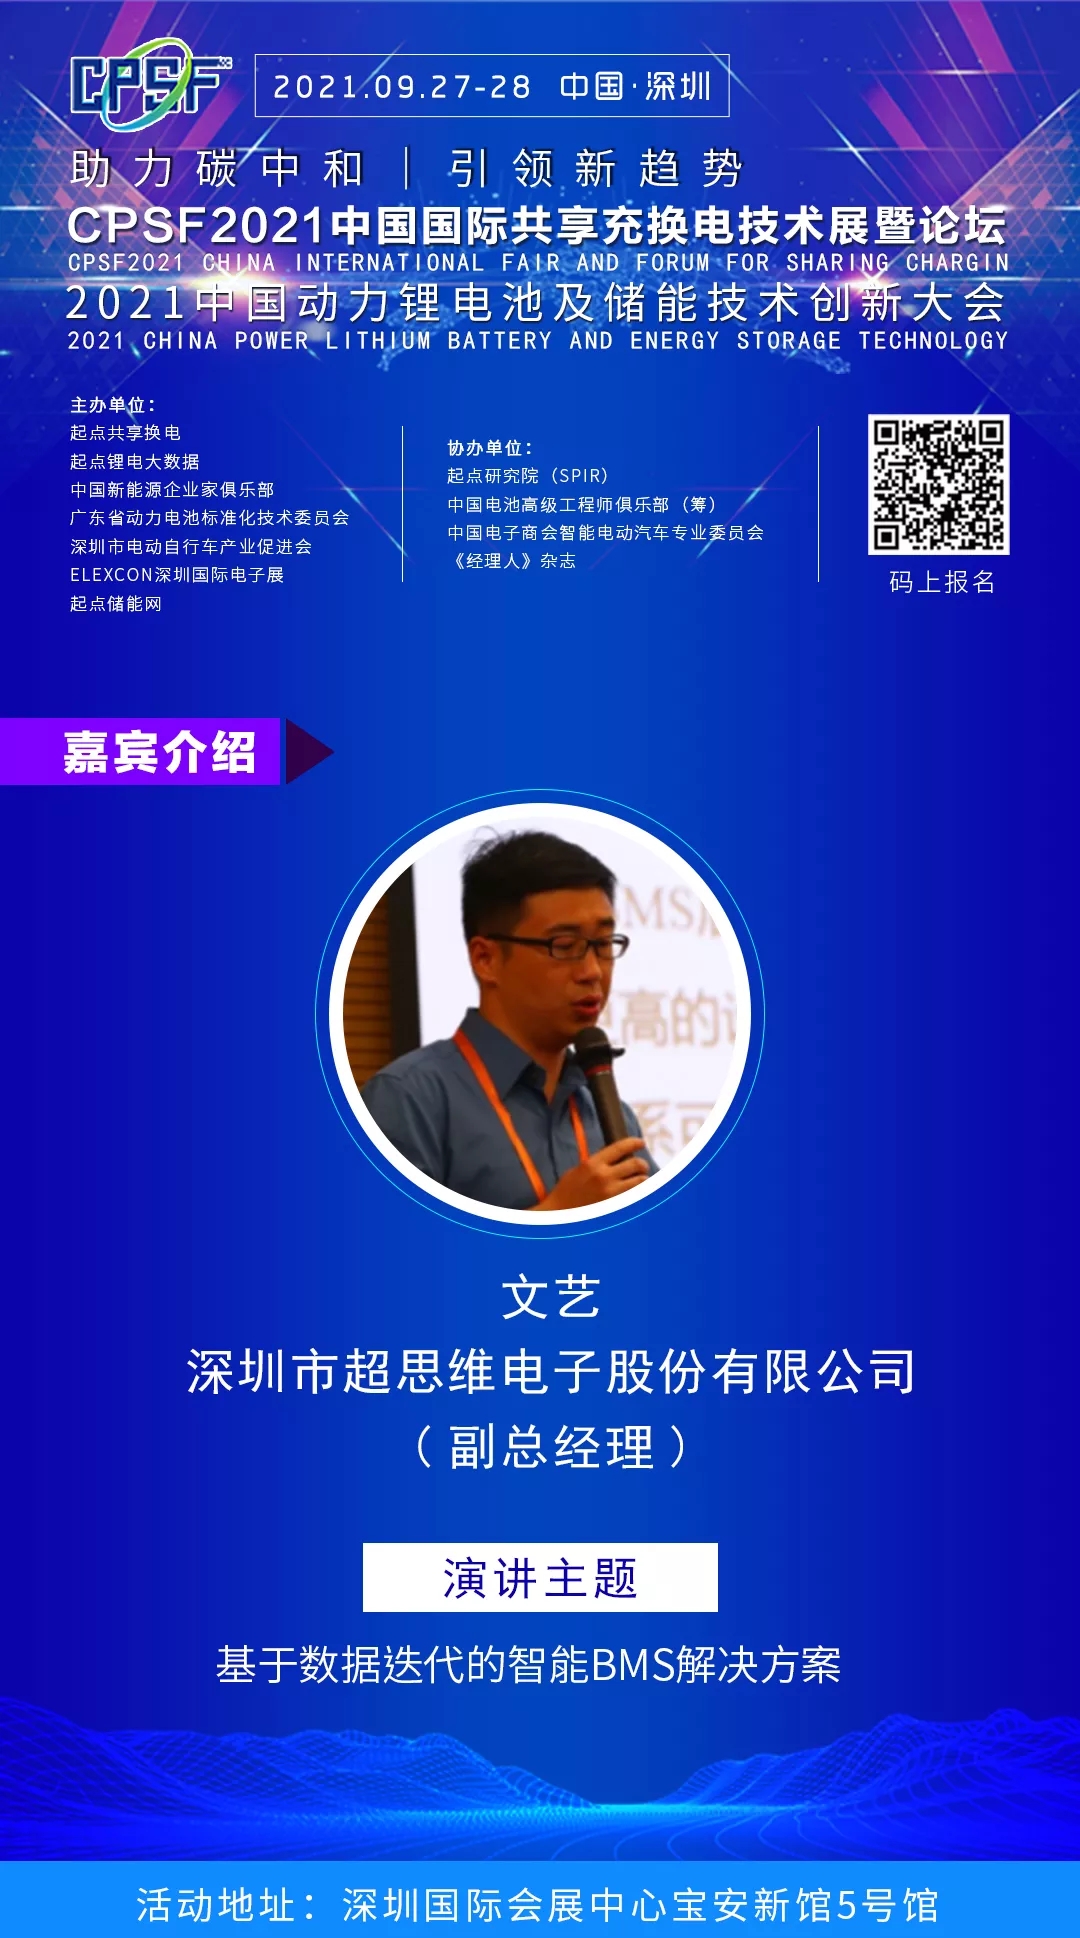 超思维 副总经理 文艺 将出席2021中国动力锂电池及储能技术创新大会并发表主题演讲